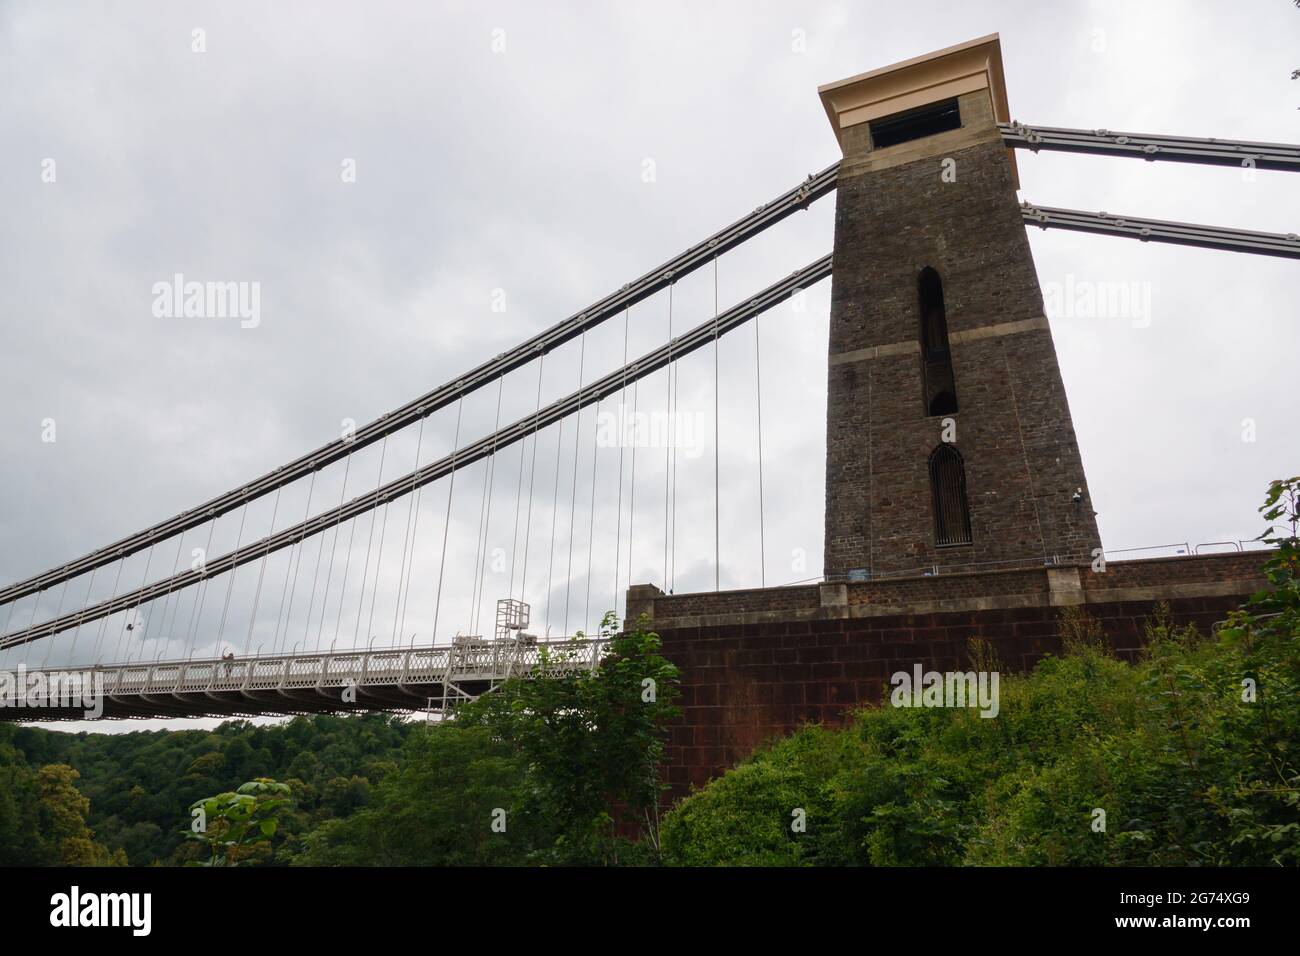 Vue sur le pont suspendu de l'Isambard Kingdom Brunel Clifton à Bristol, Royaume-Uni Banque D'Images